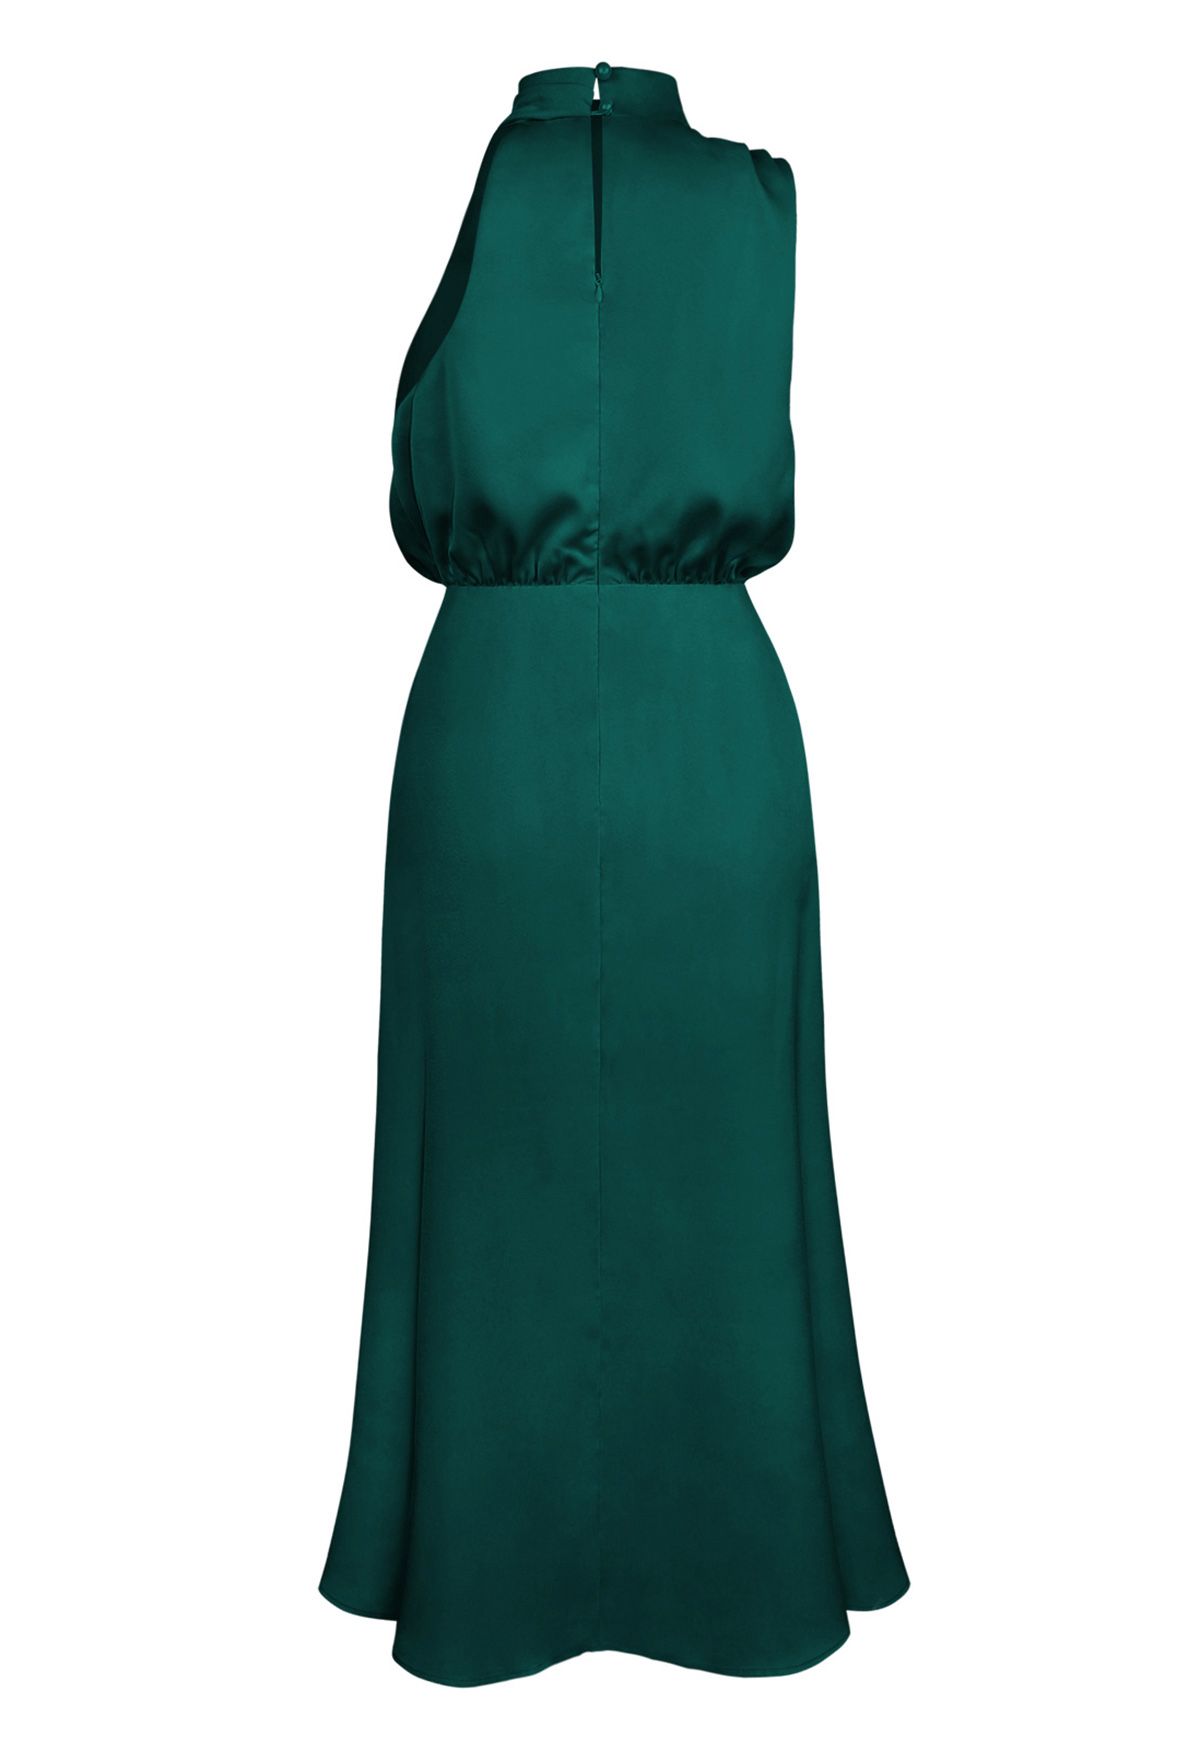 غير متماثل Ruched العنق بلا أكمام فستان باللون الأخضر الداكن